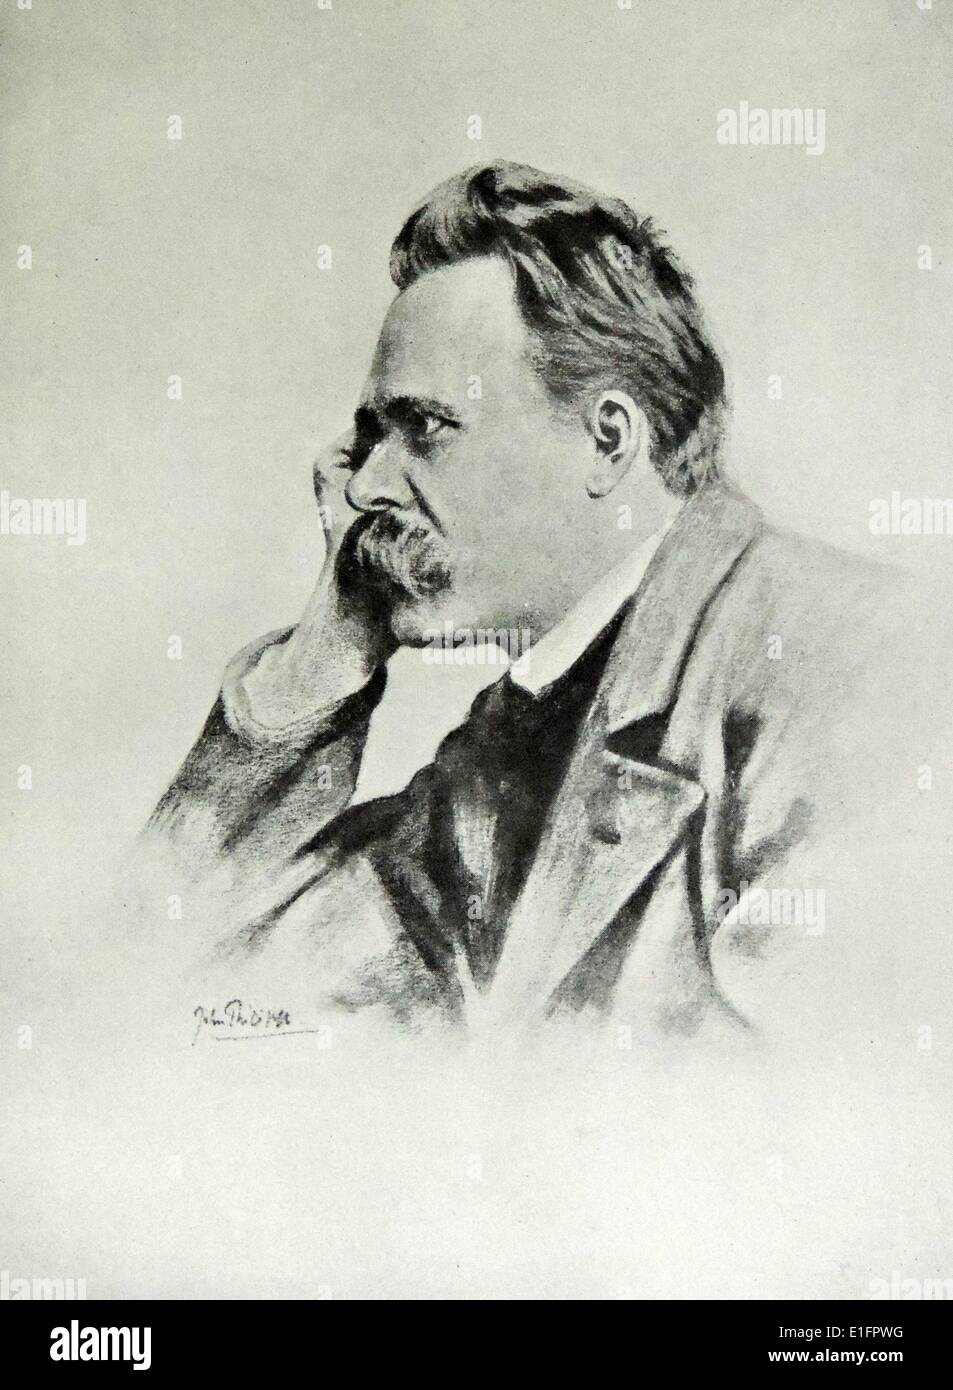 Portrait de Friedrich Nietzsche (1844 - 1900) philosophe allemand, philosophe, critique culturel, poète et compositeur. Datée 1912 Banque D'Images